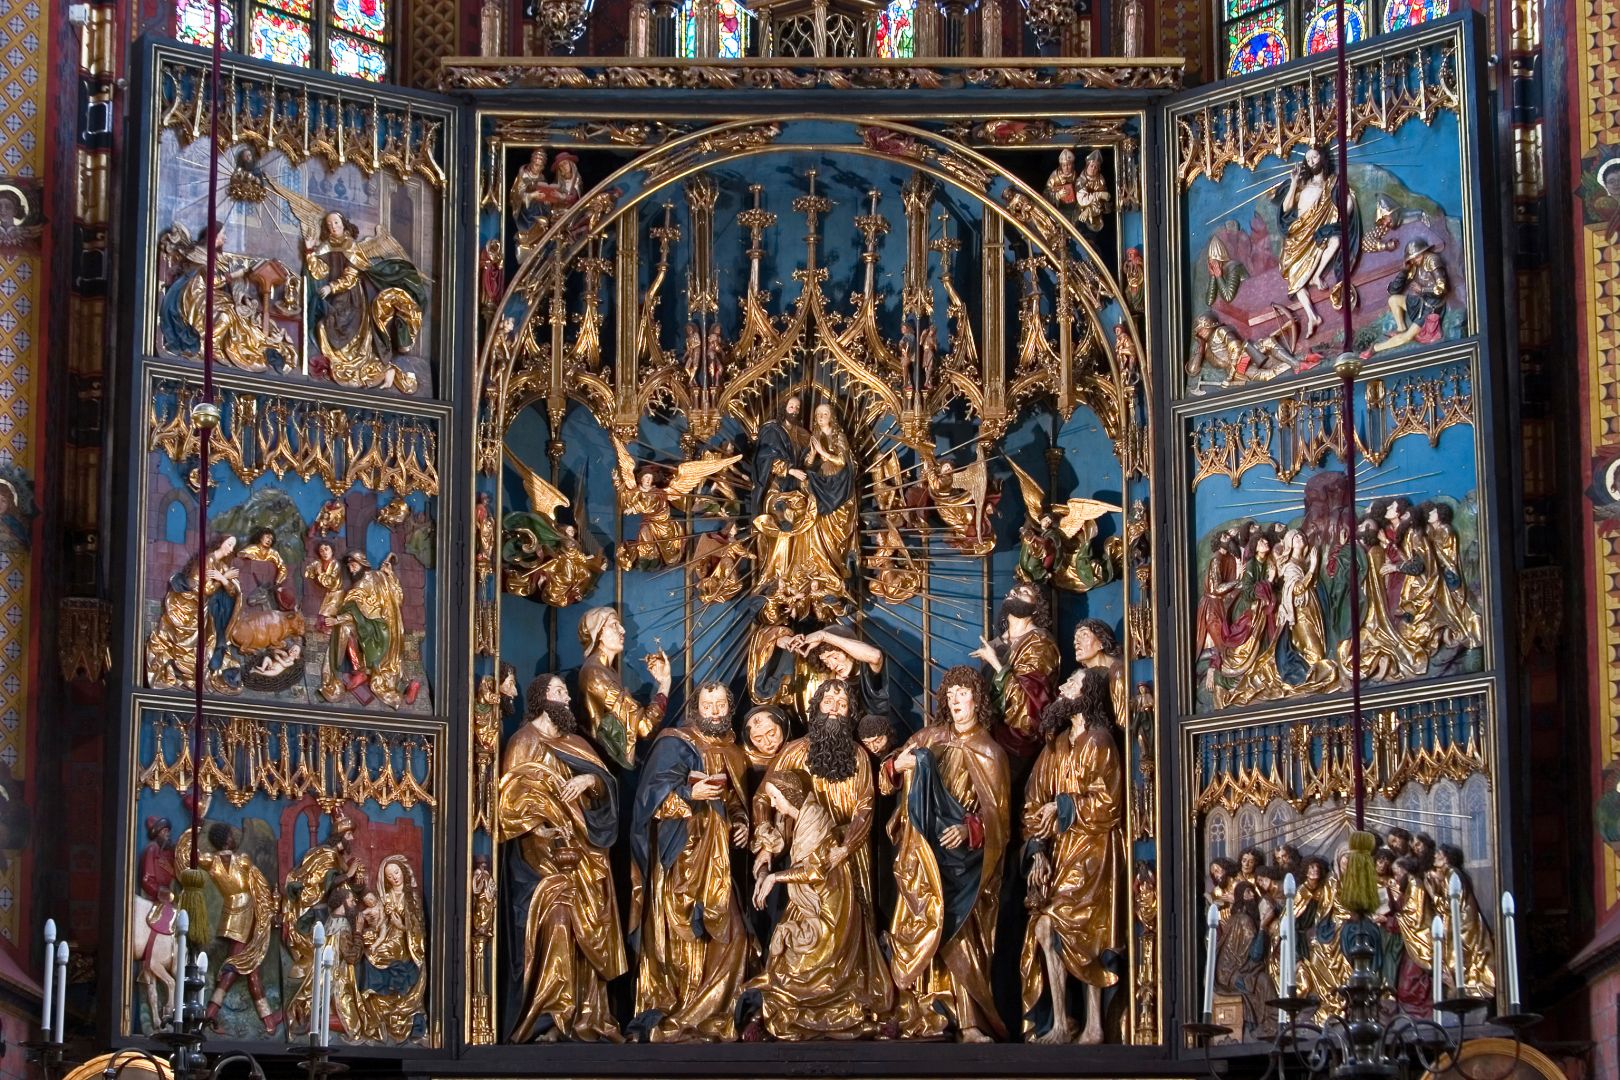 St. Mary's Altar